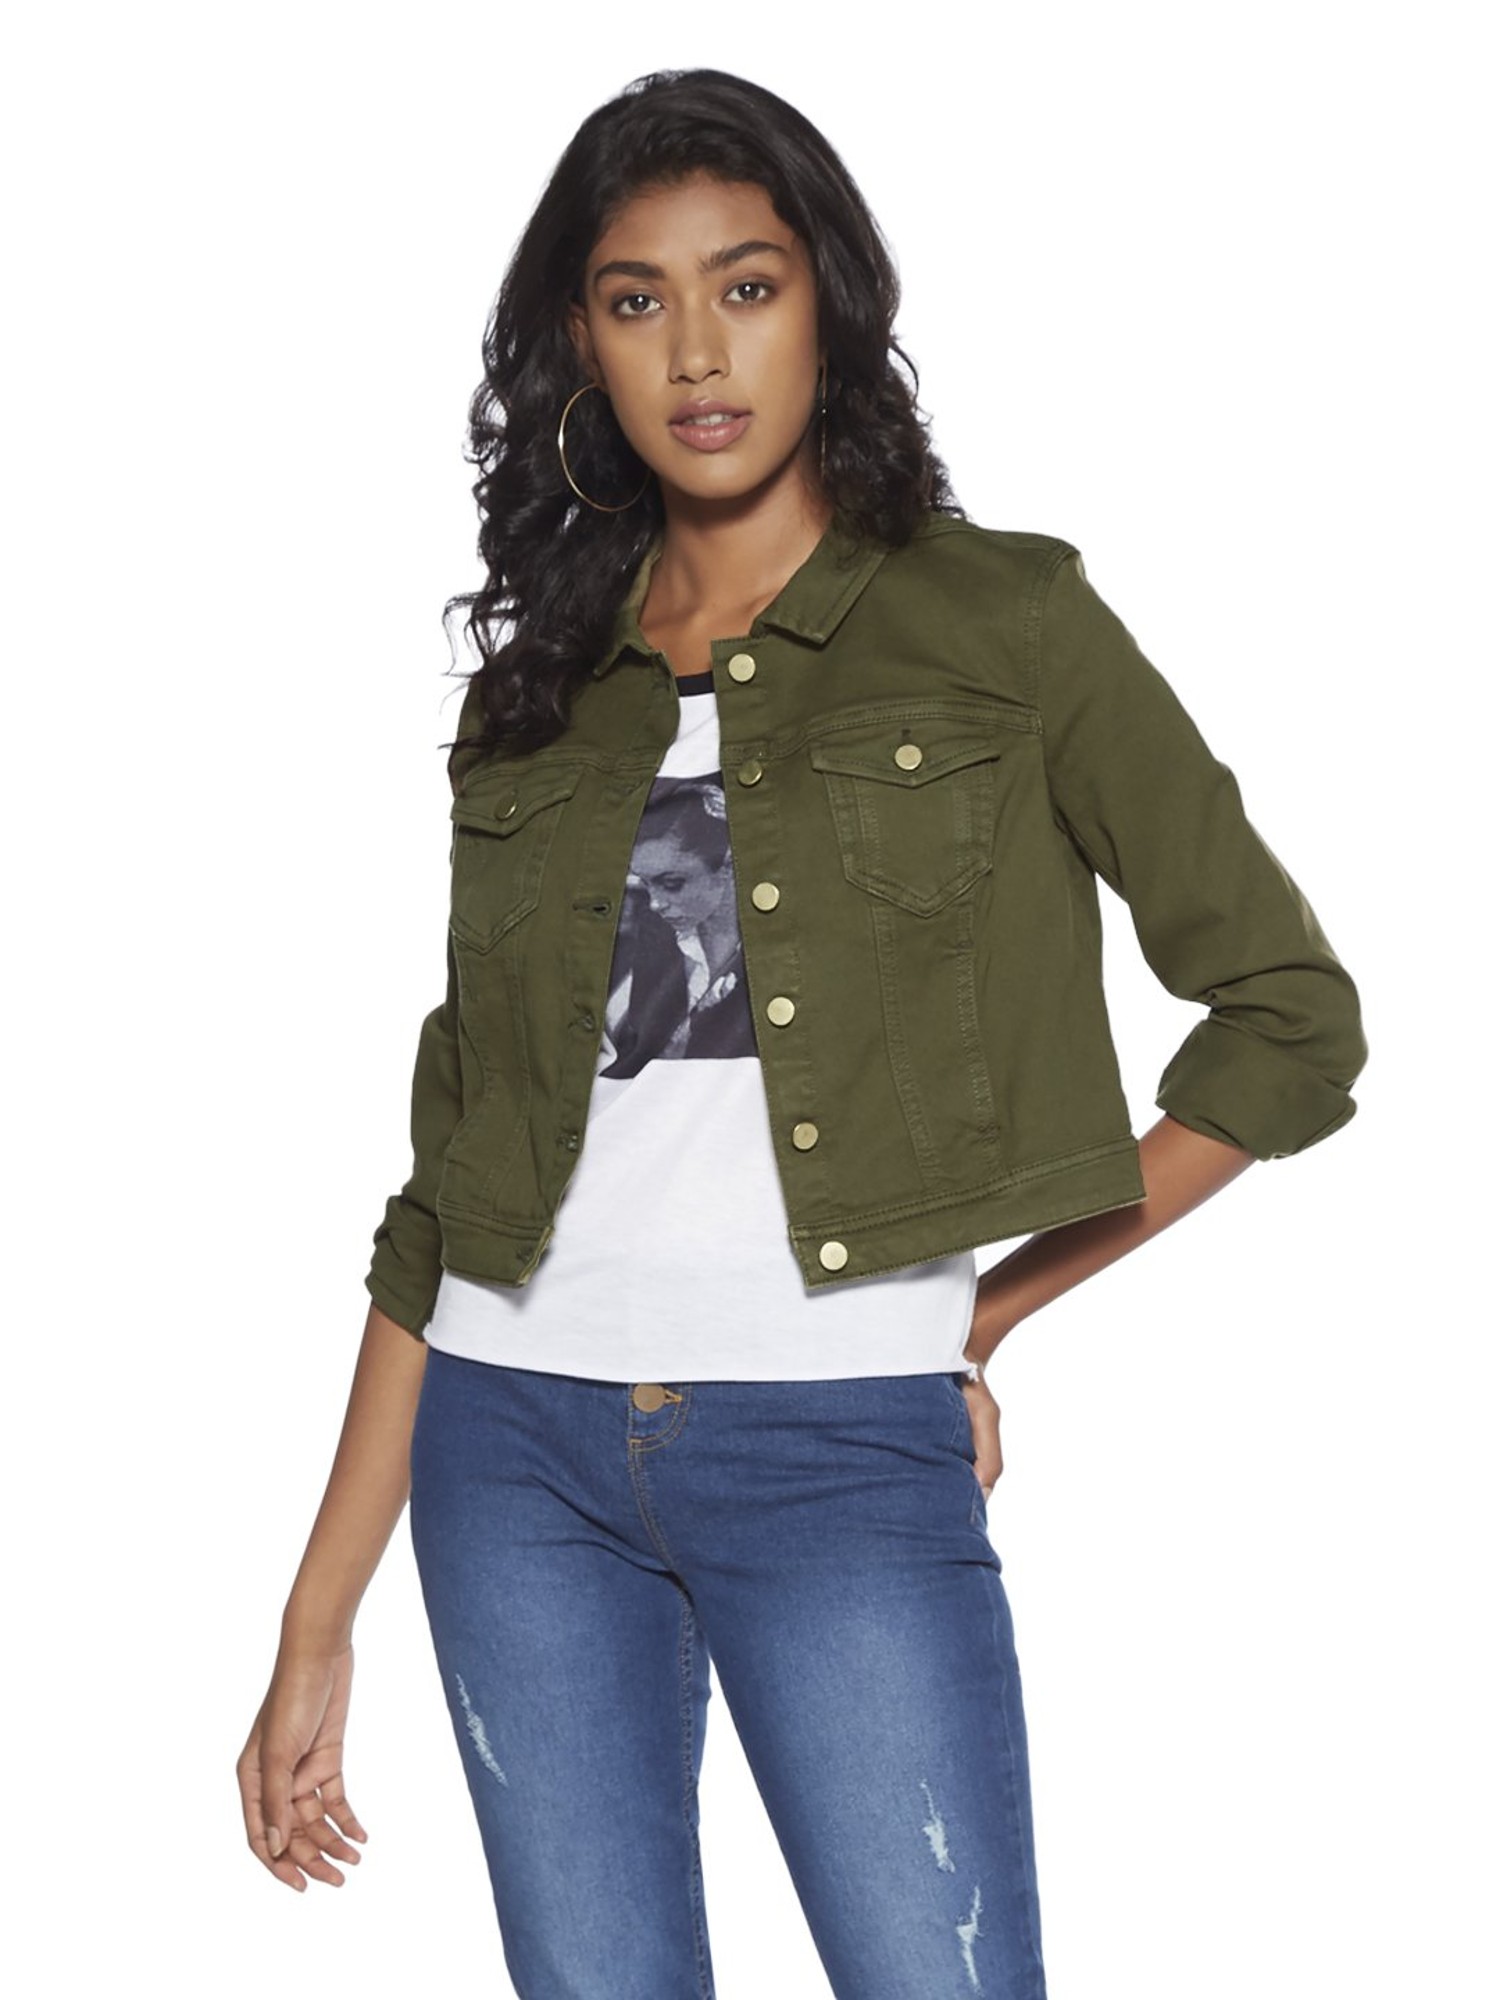 Buy Bernard Classic Denim Jacket for Women Online in India on a la mode